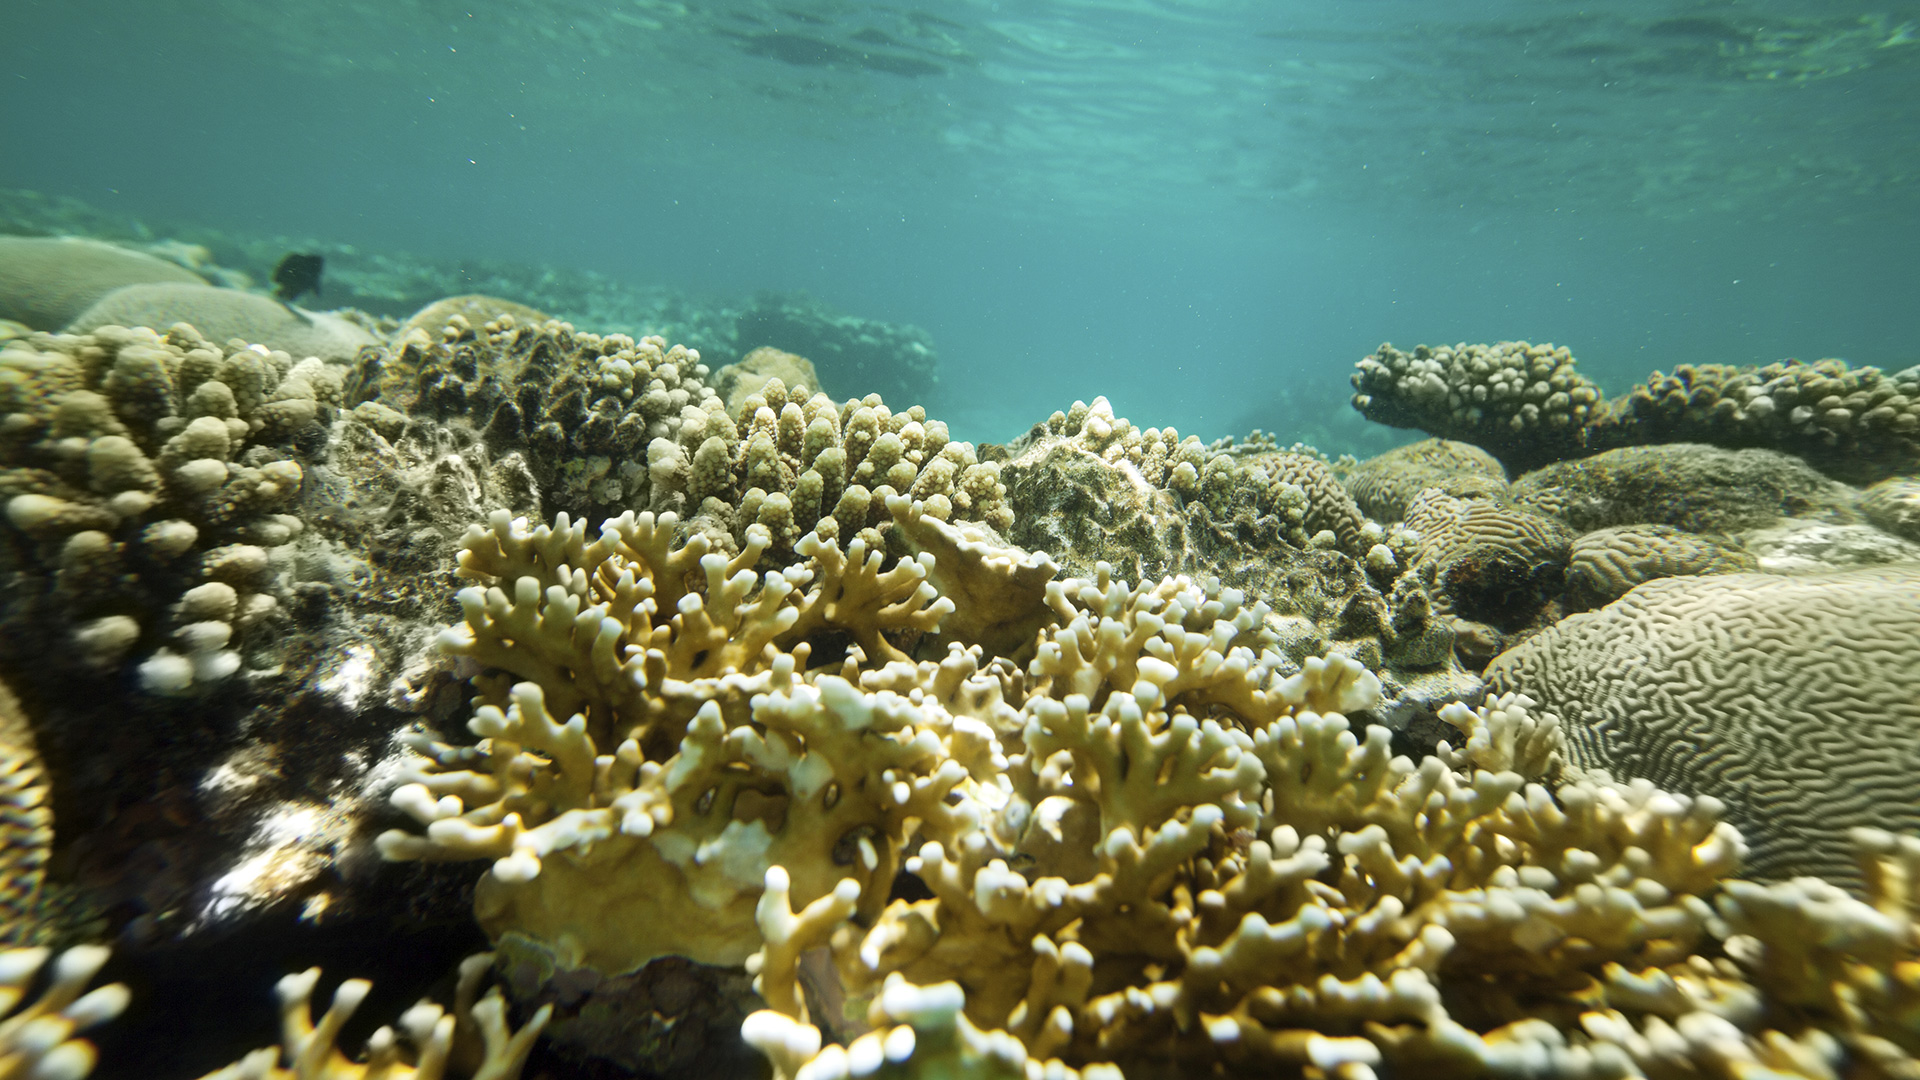 Retter in der Not oder Tod? Stickstoff spielt Doppelrolle für Korallen